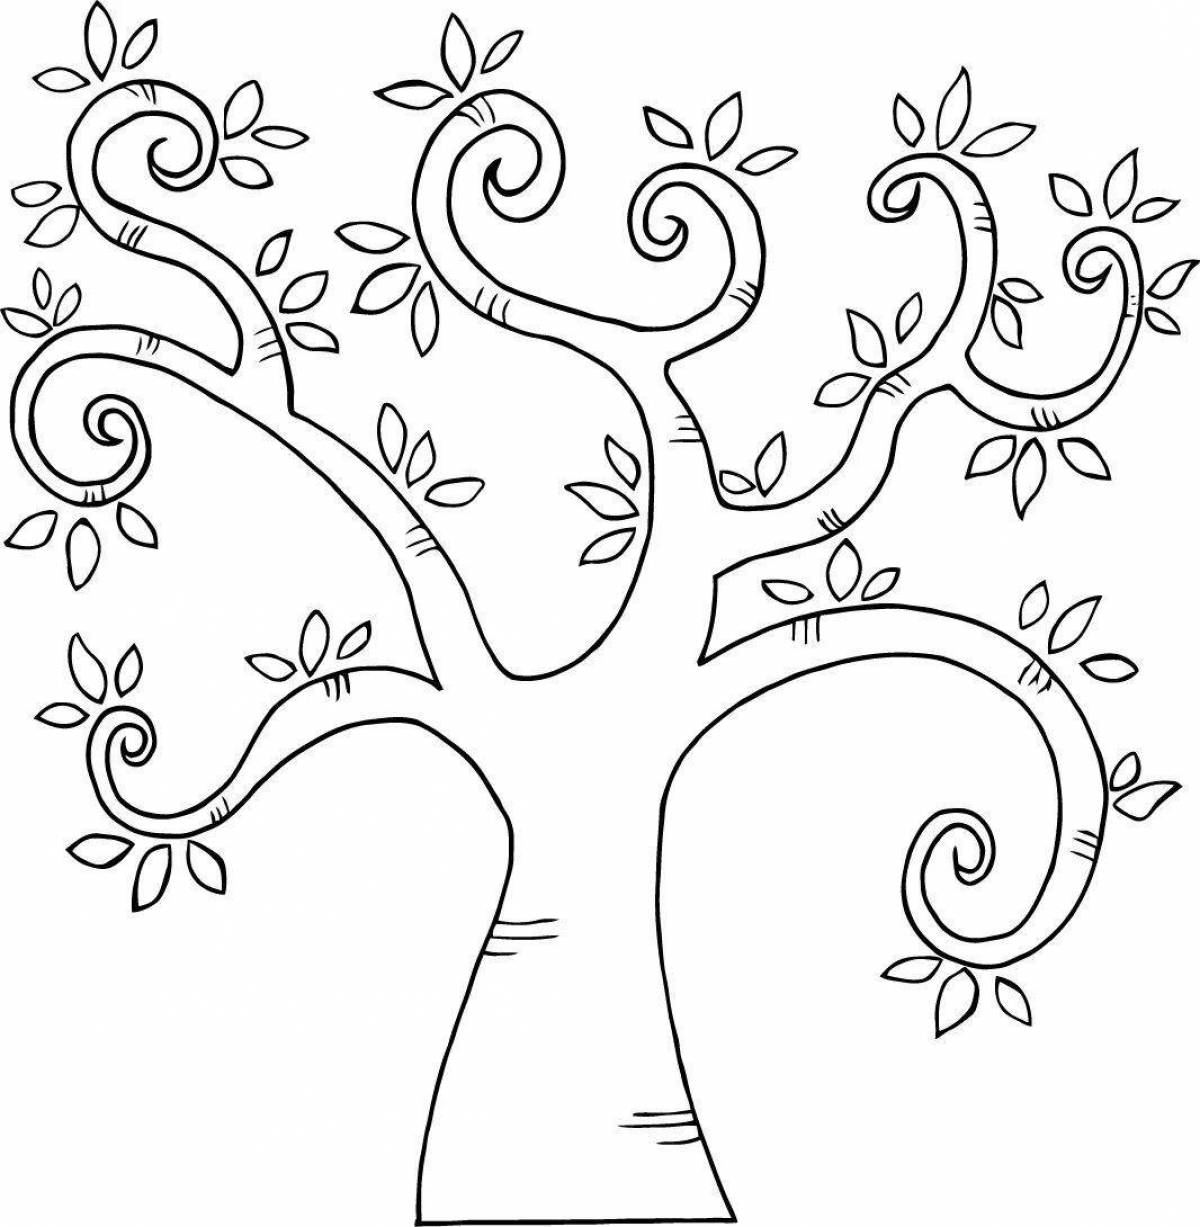 корней чуковский чудо дерево картинки